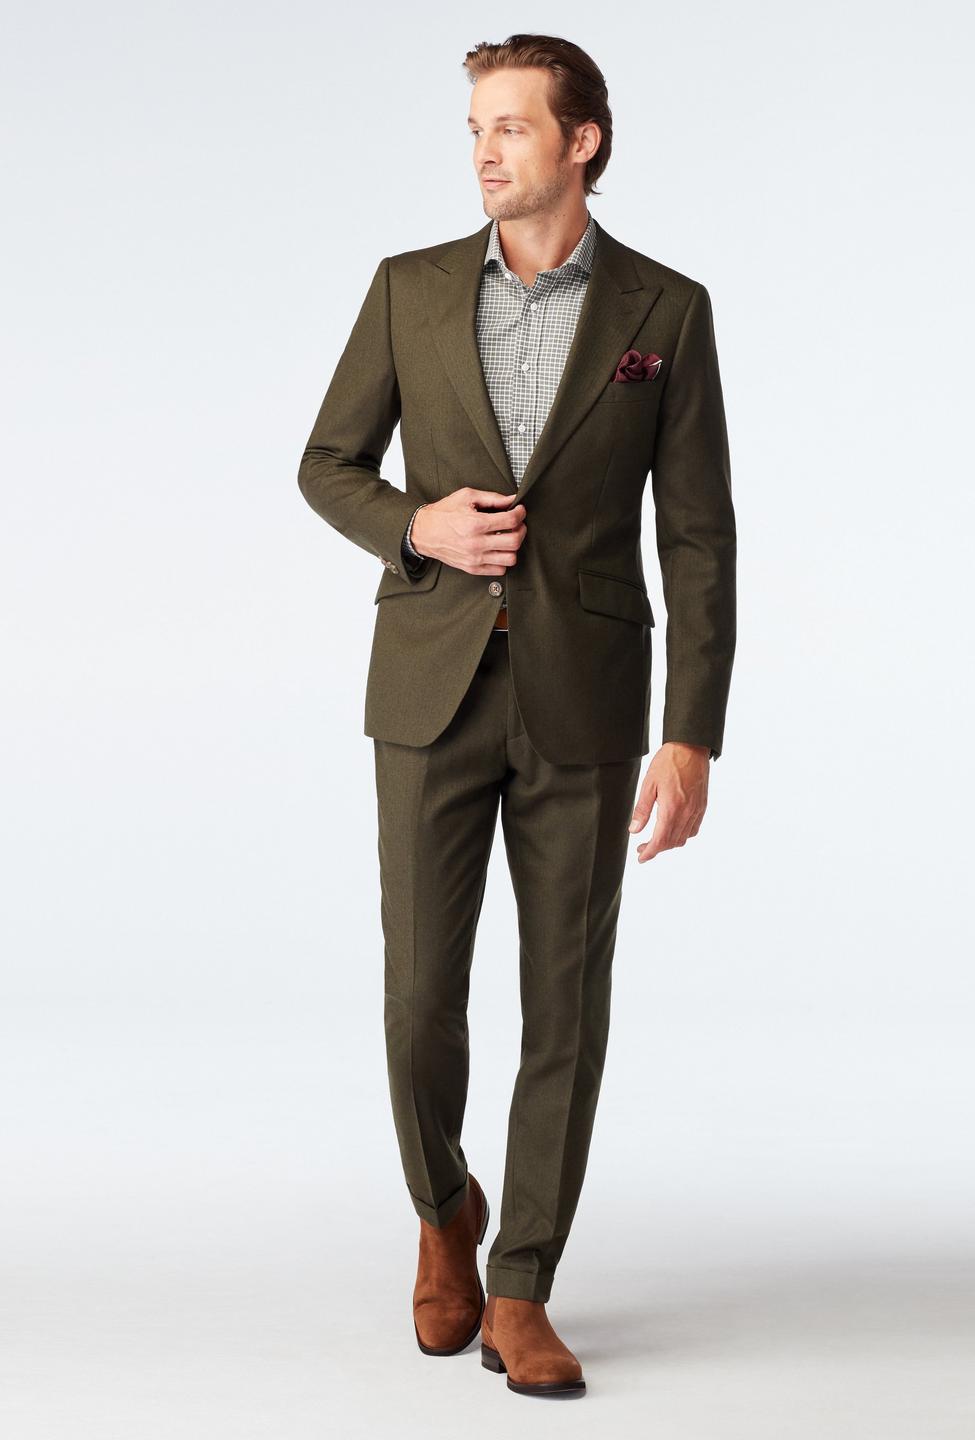 Prescot Herringbone Olive Suit (CAD)